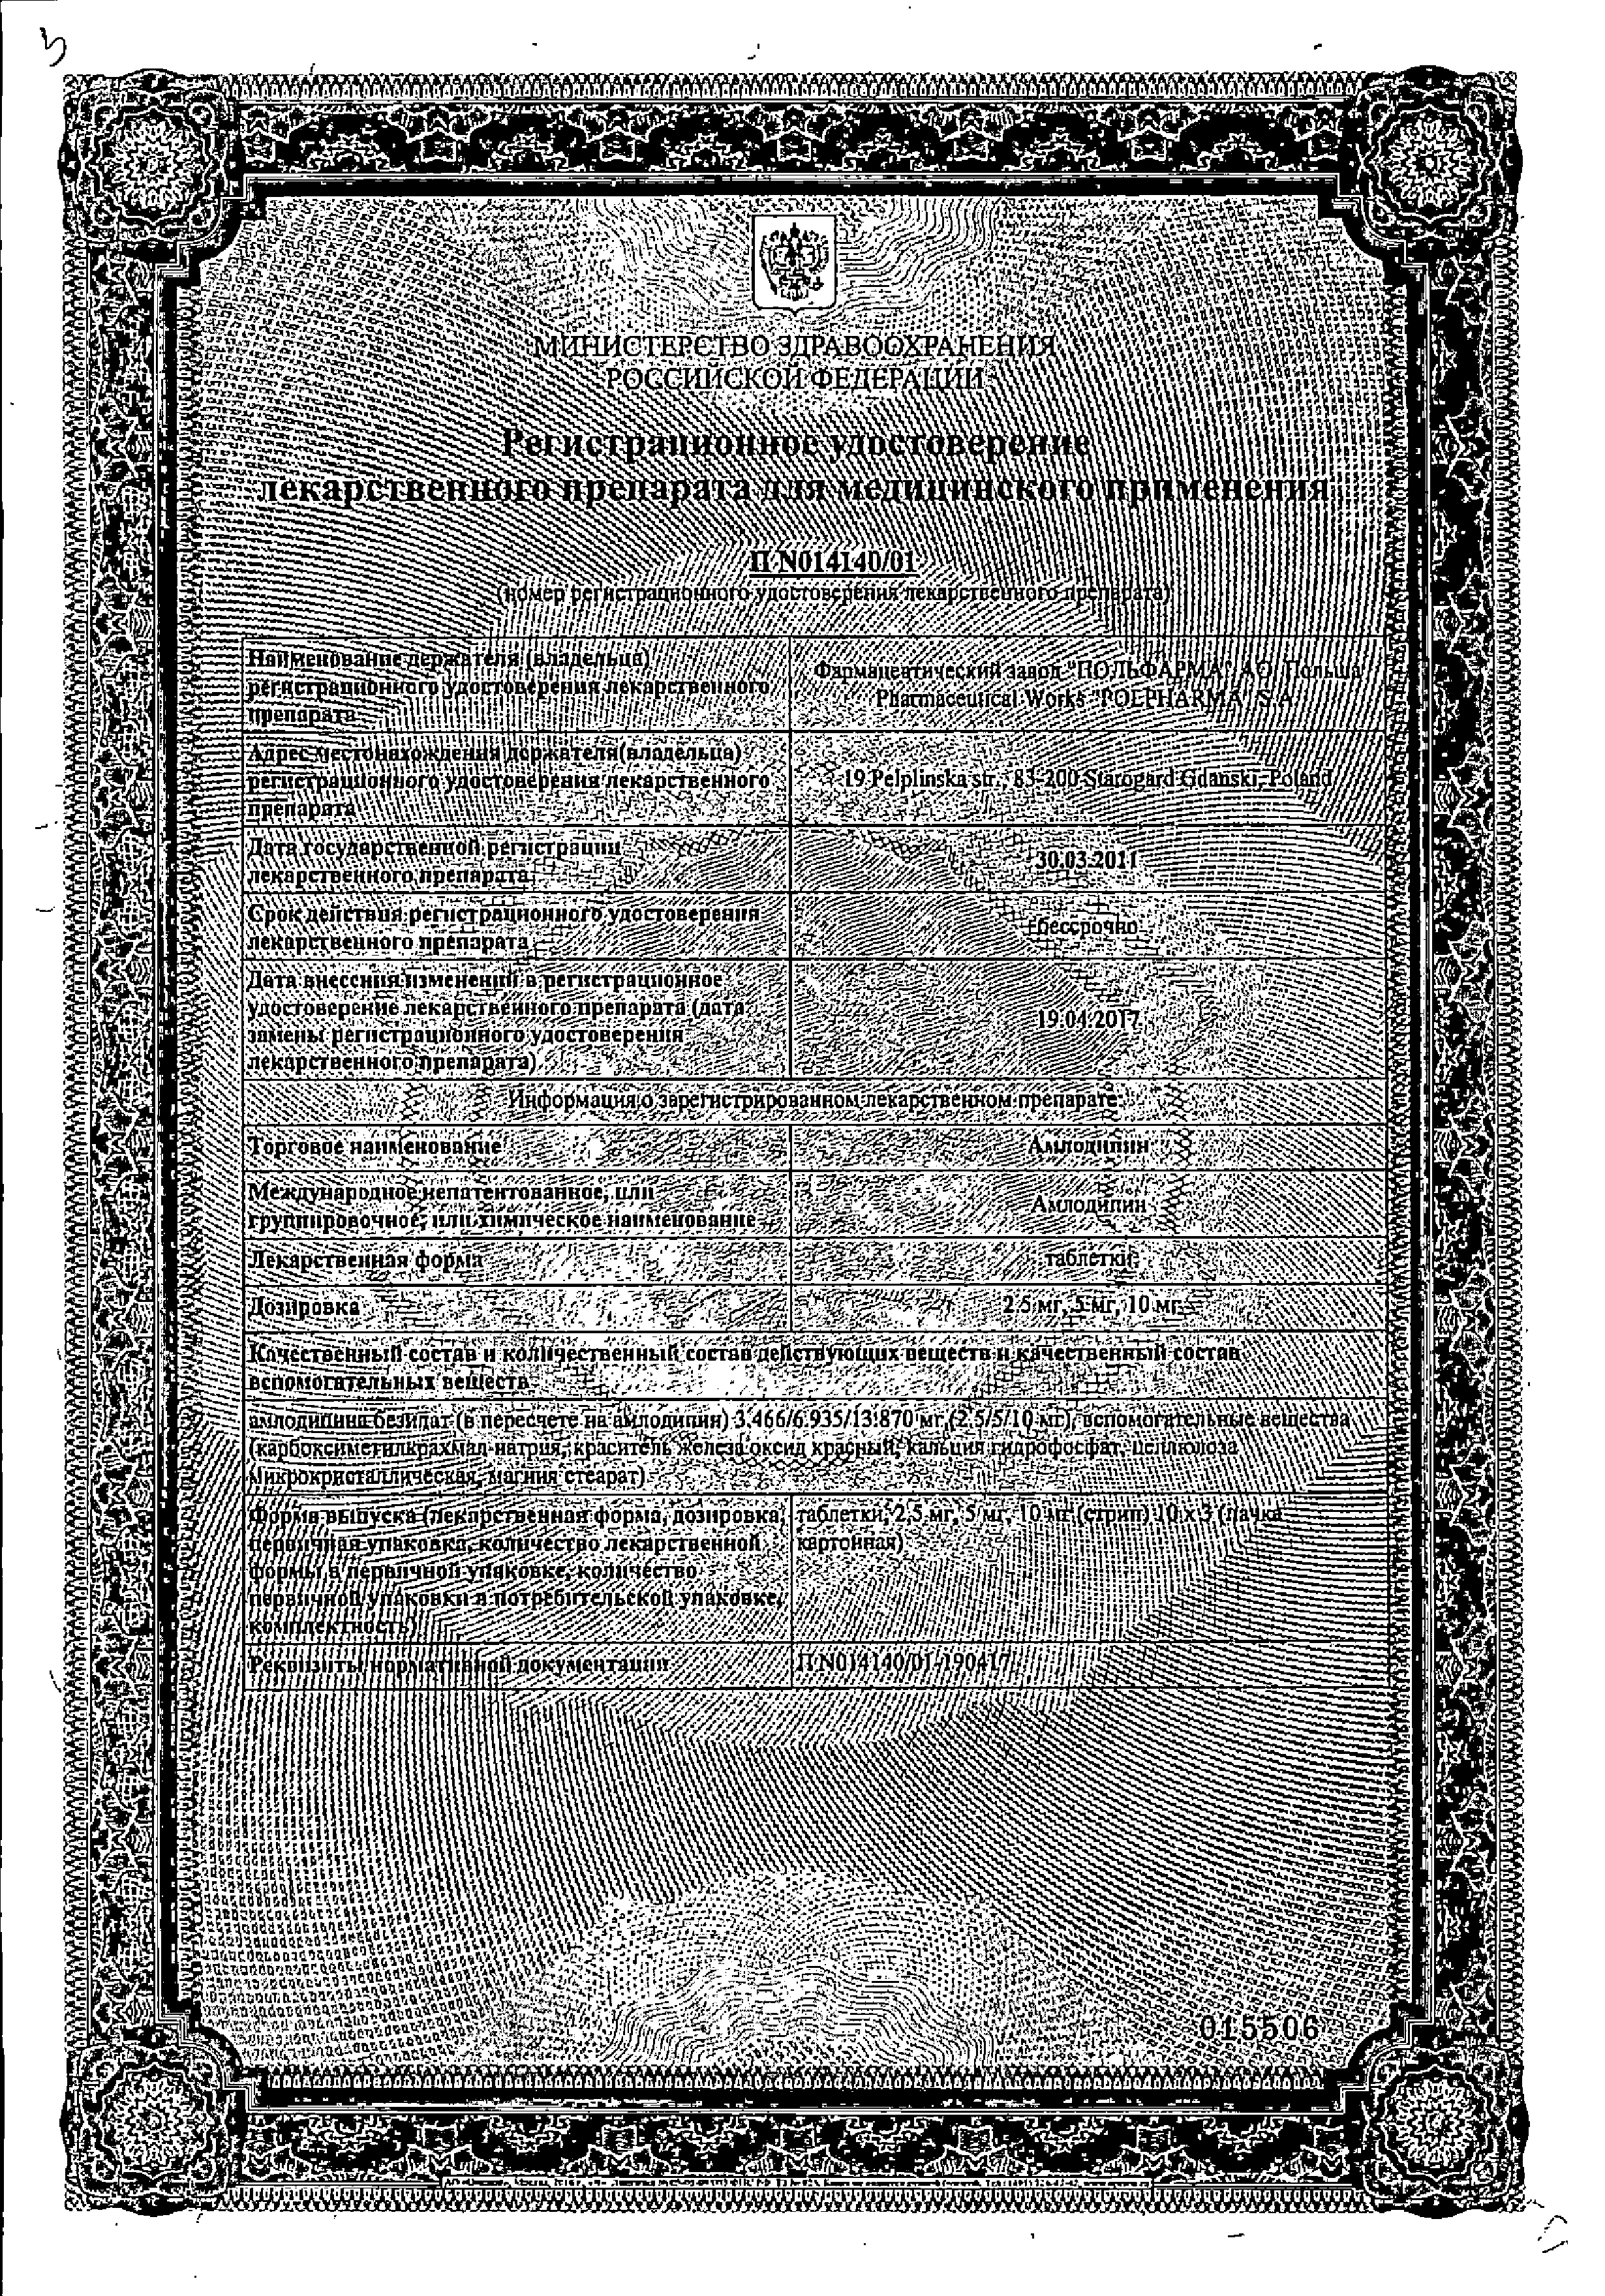 Амлодипин сертификат